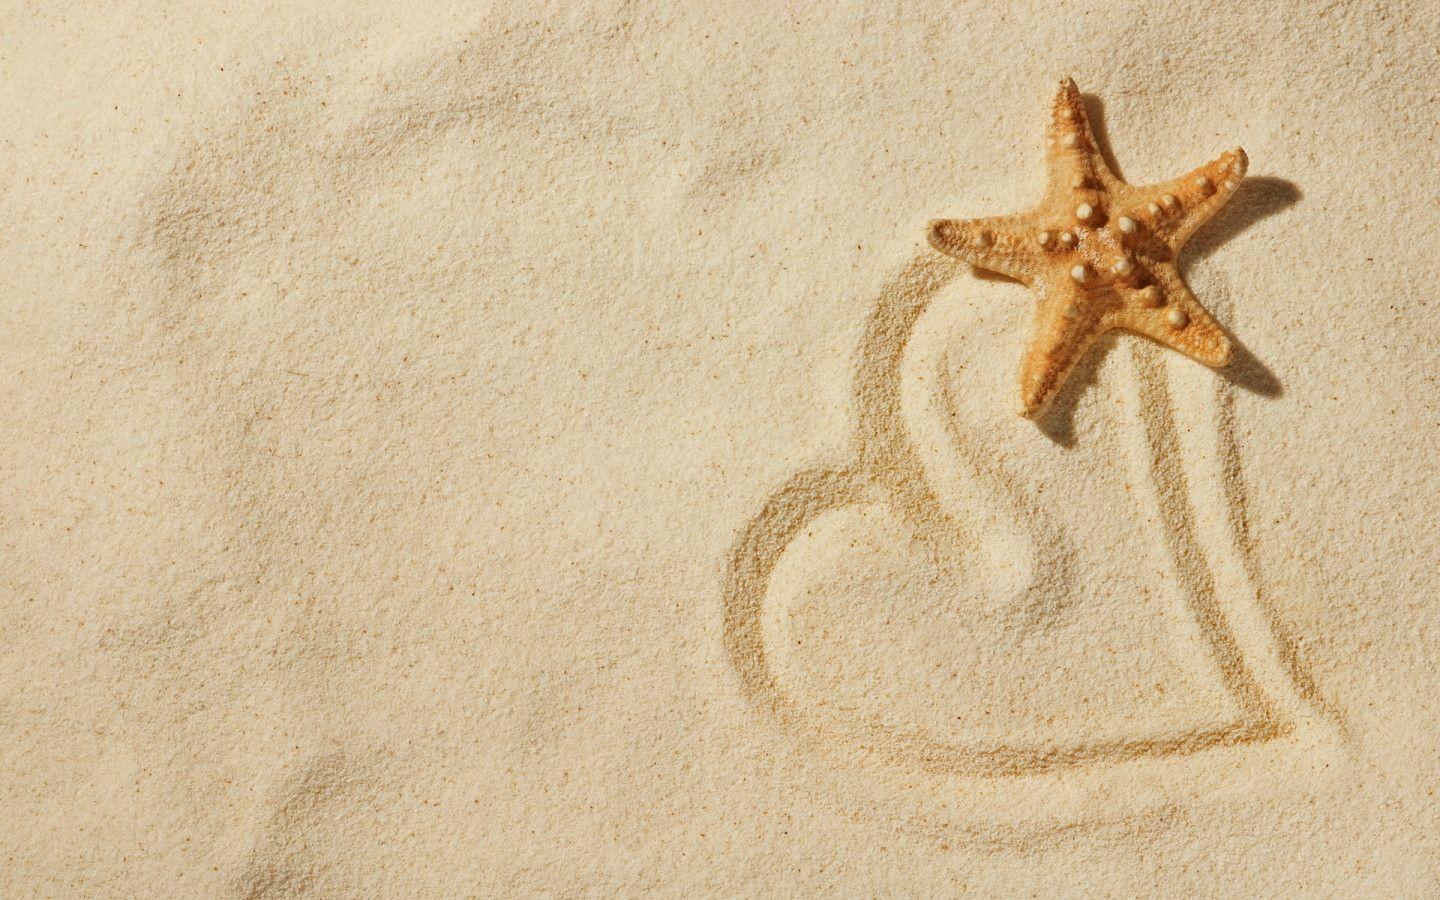 Heart Star Sand Beach widescreen wallpaper. Wide